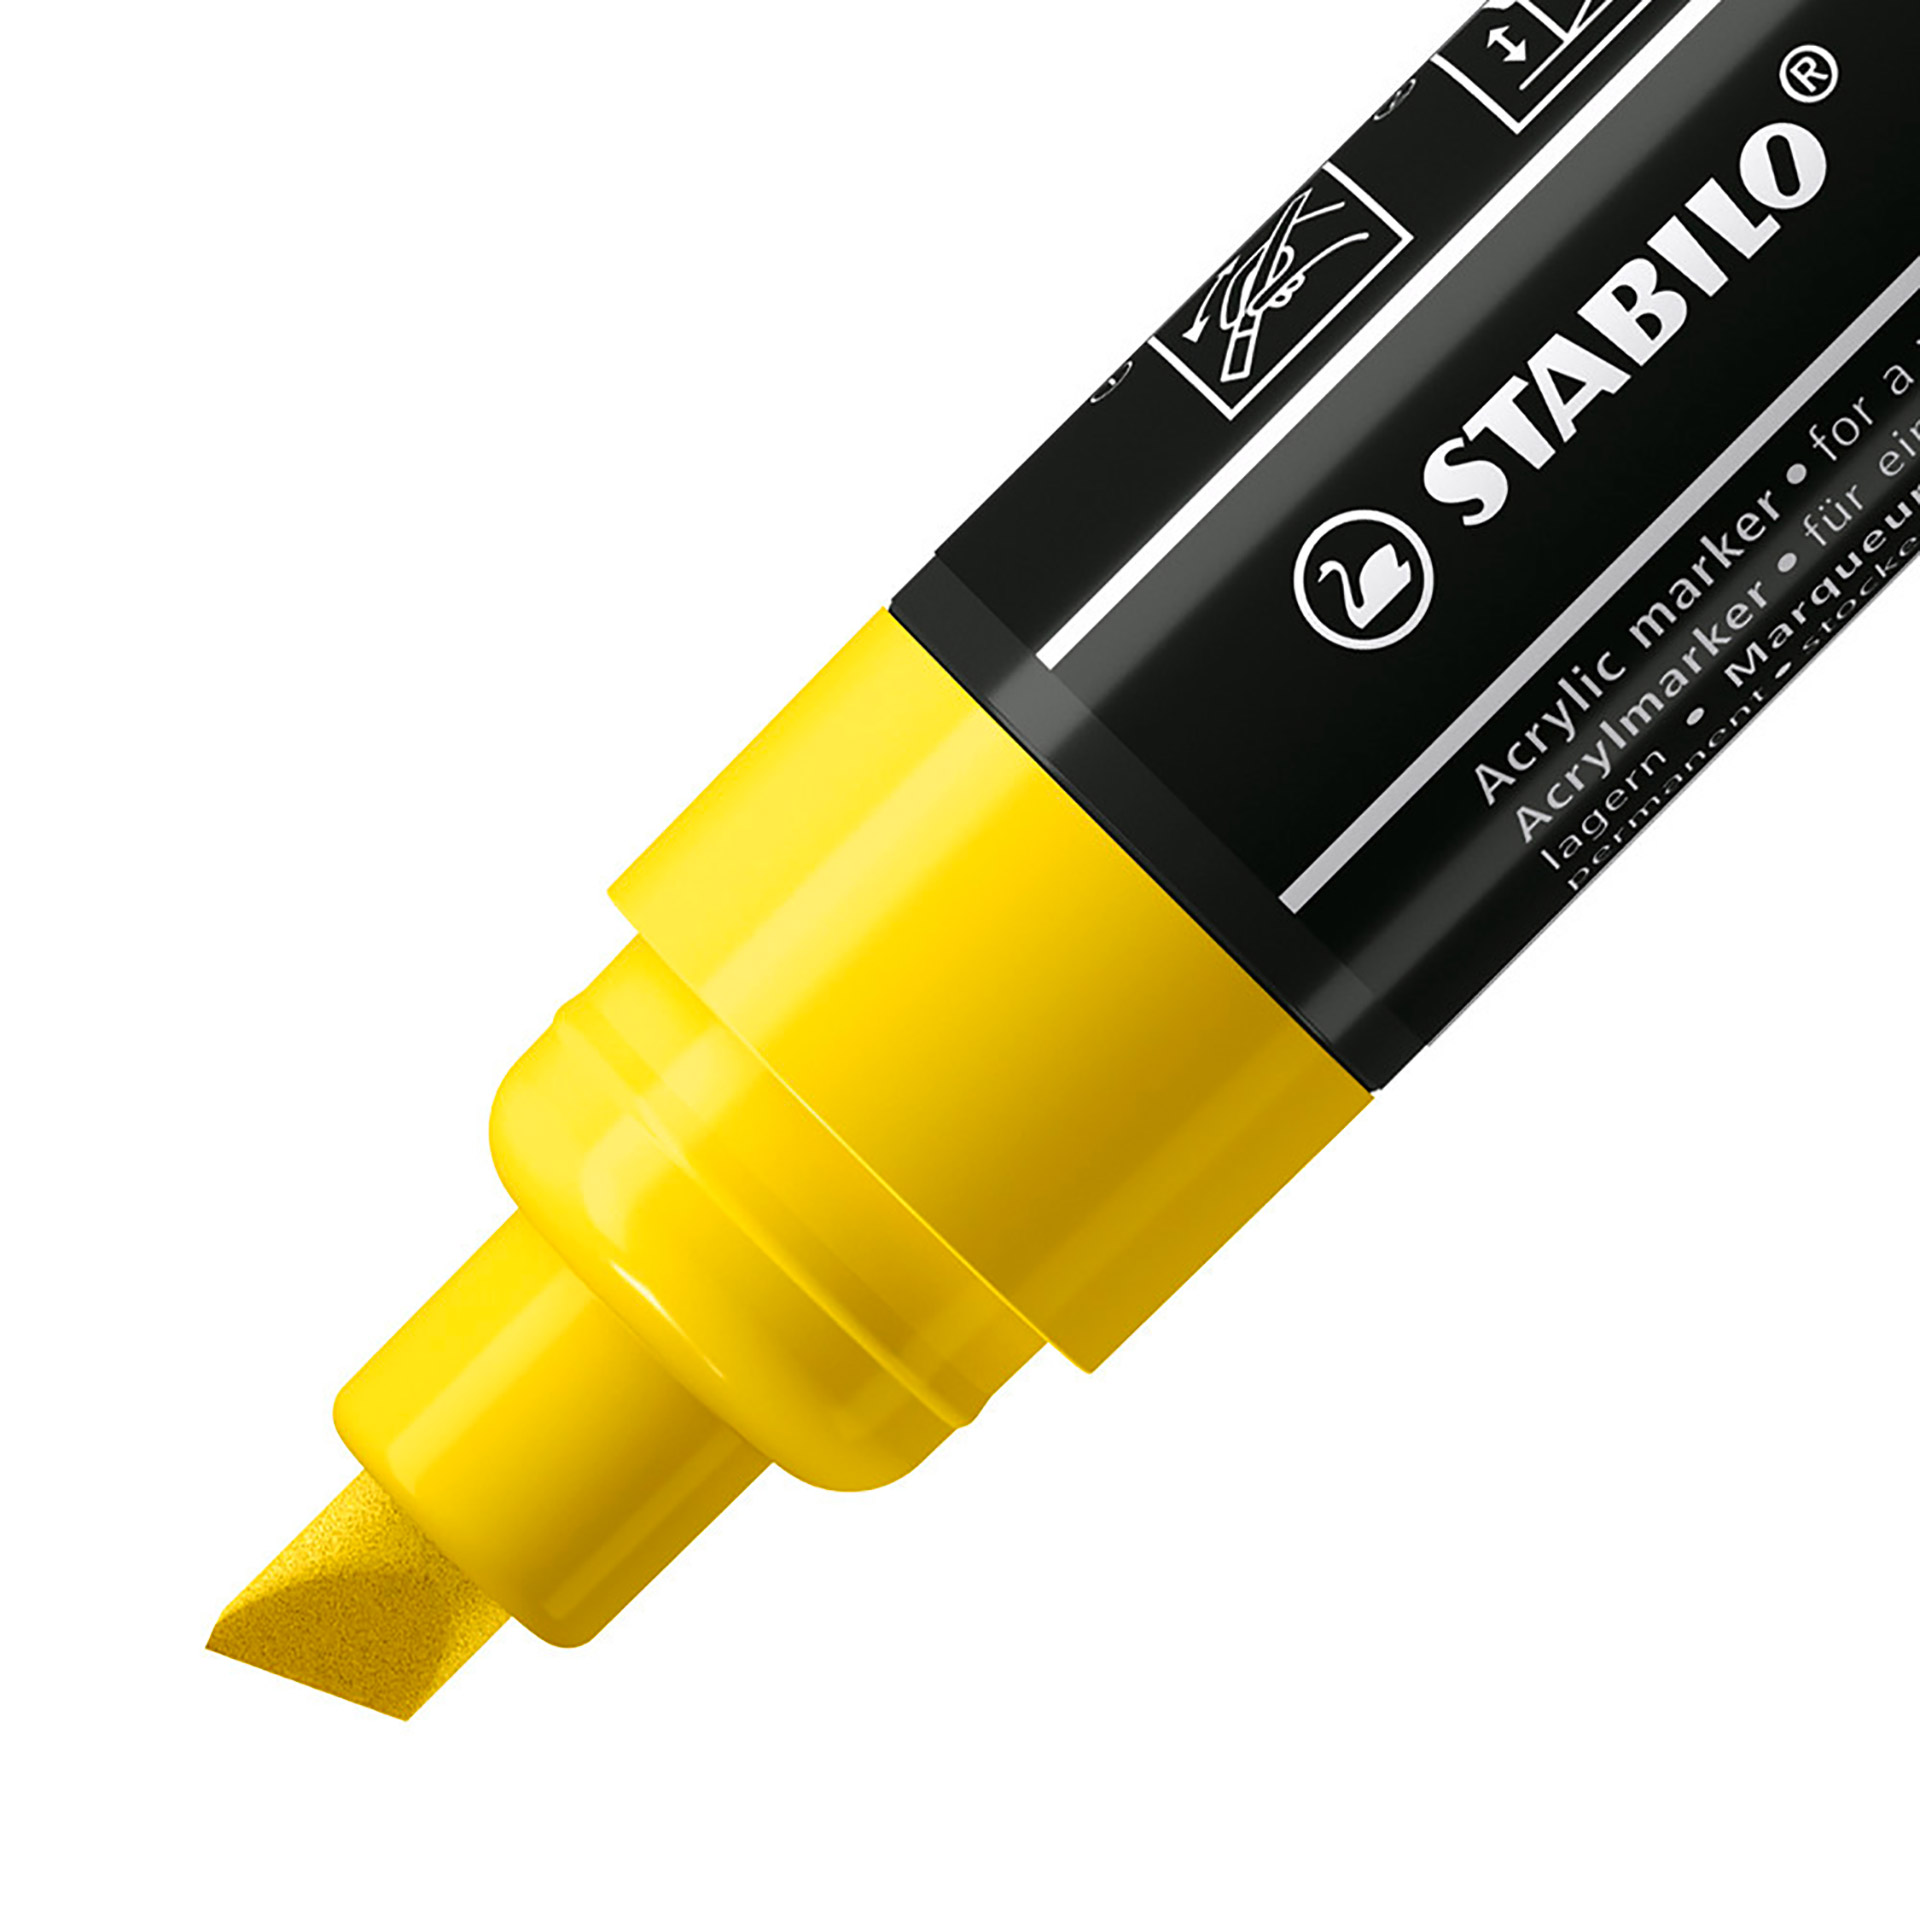 STABILO FREE Acrylic - T800C Punta a scalpello 4-10mm - Confezione da 5 - Giallo, , large